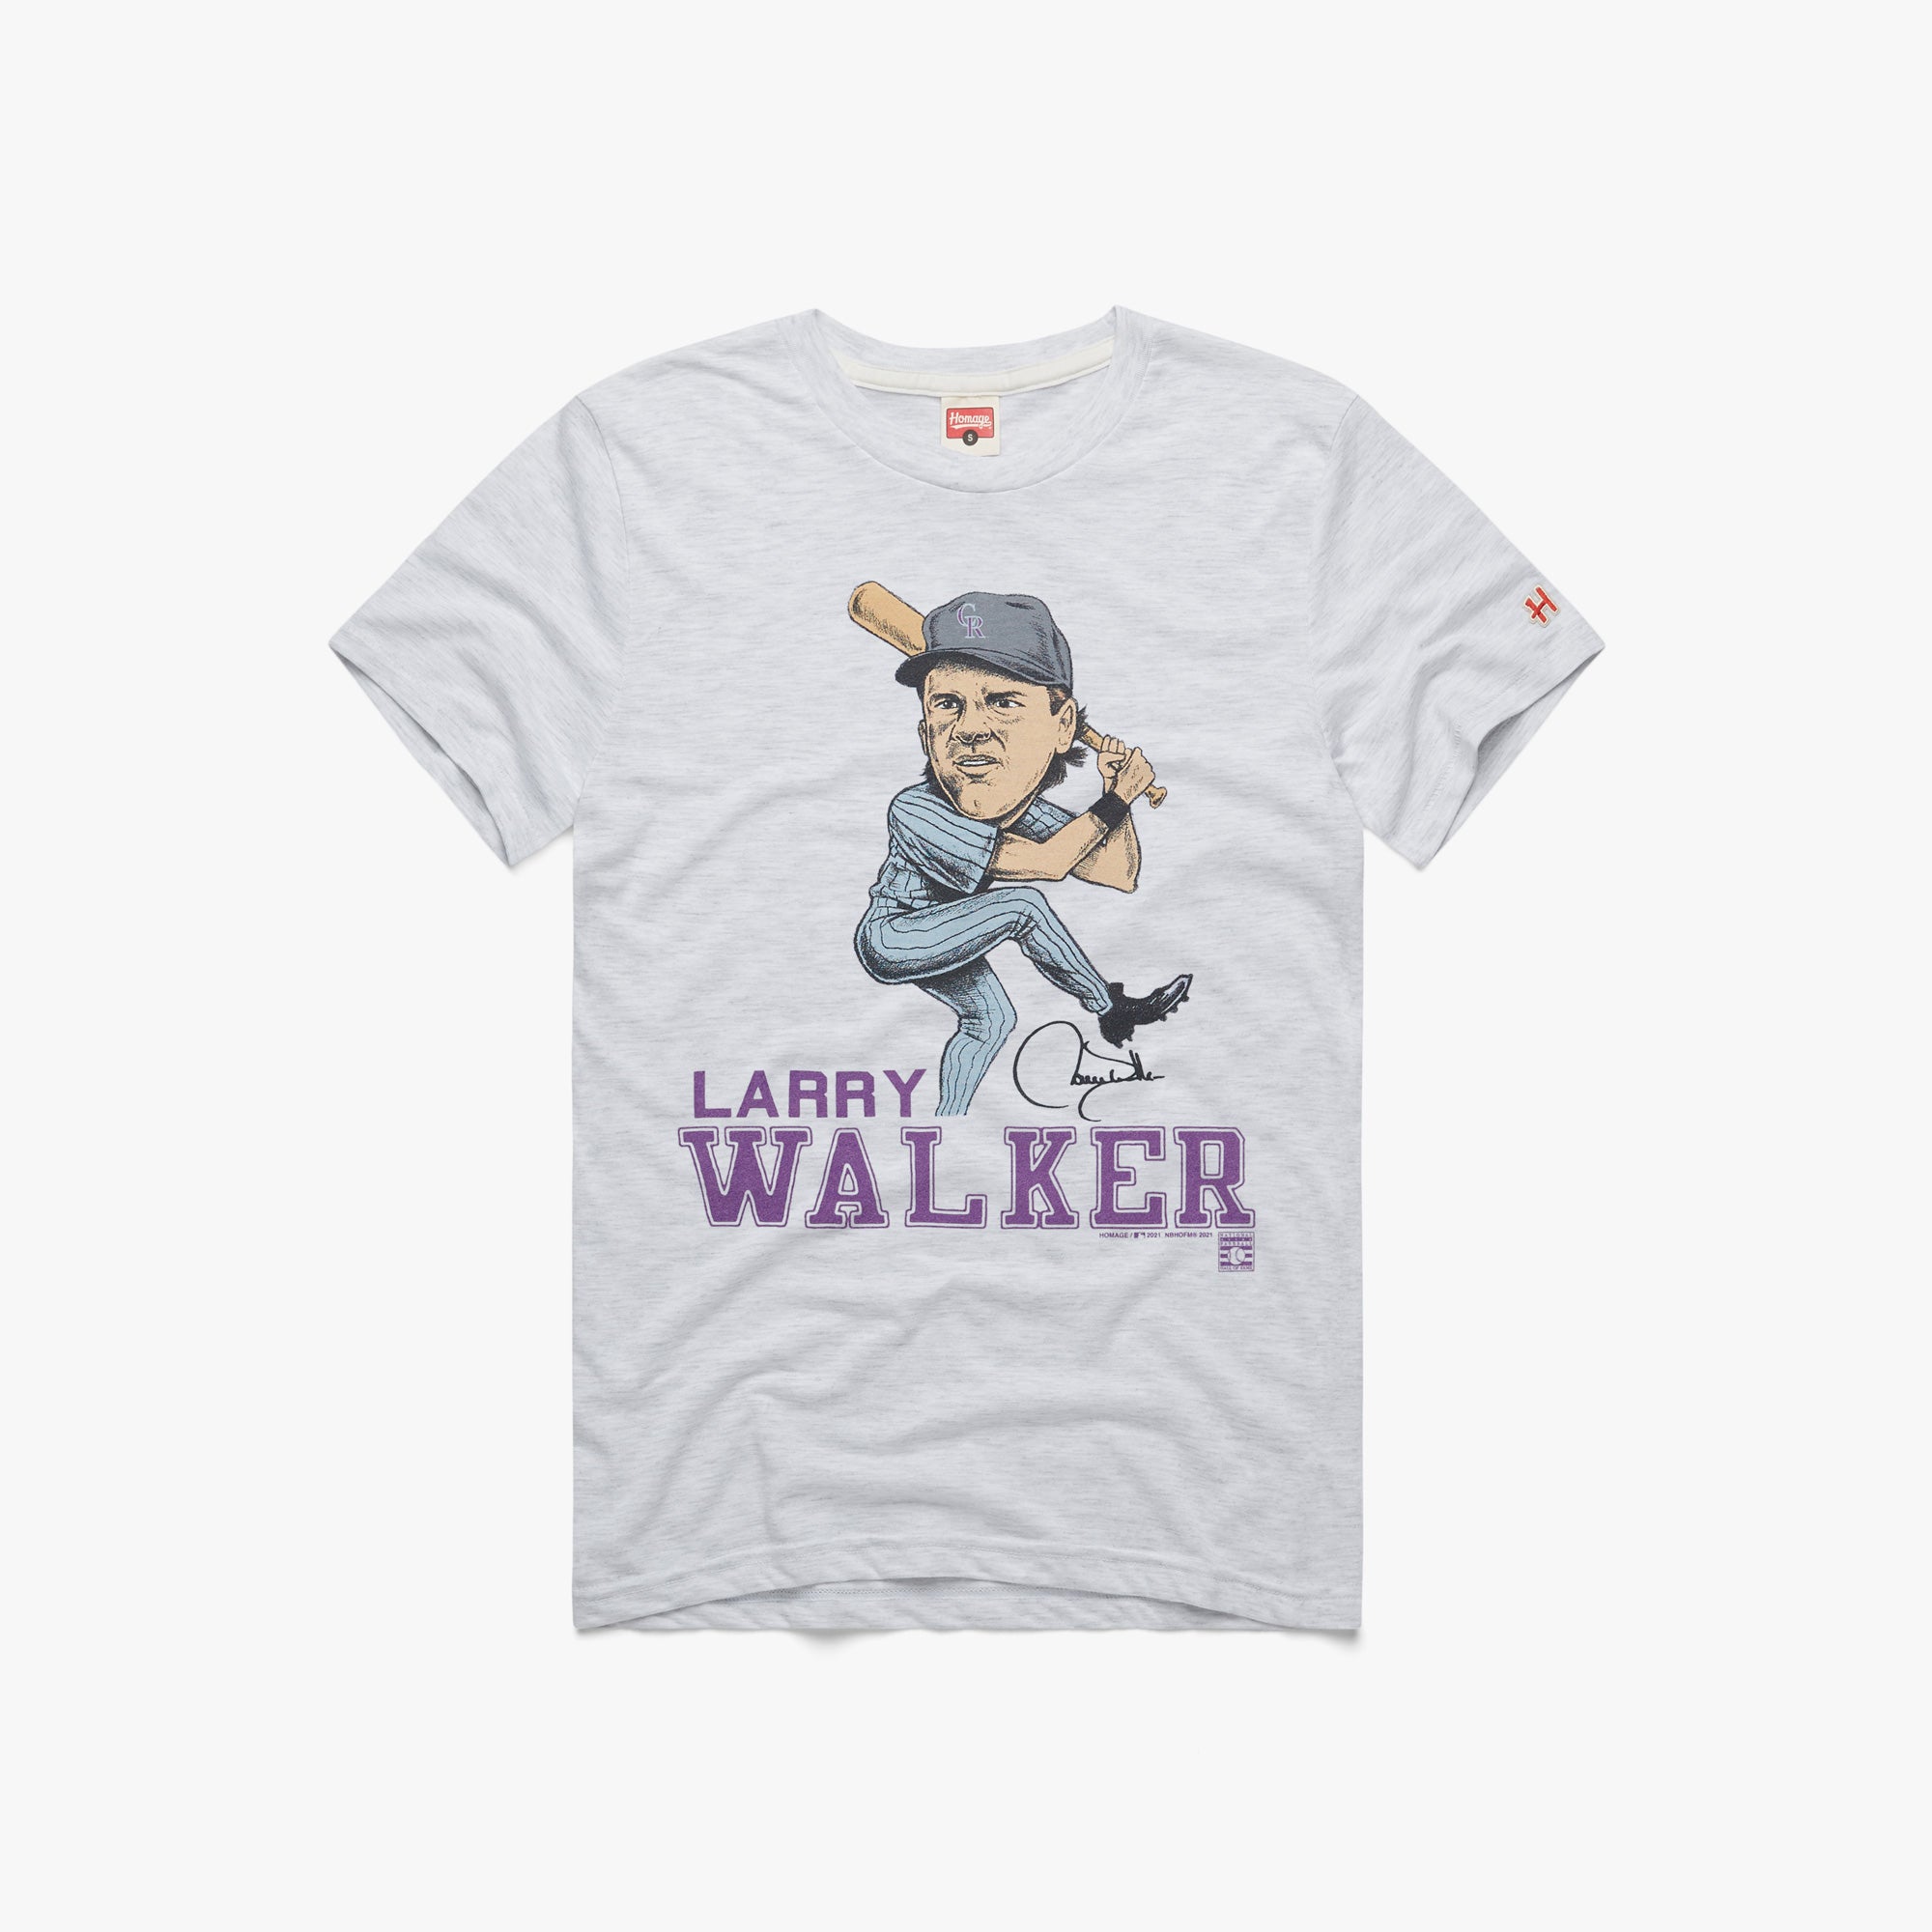 Official Larry Walker Colorado Rockies Jersey, Larry Walker Shirts